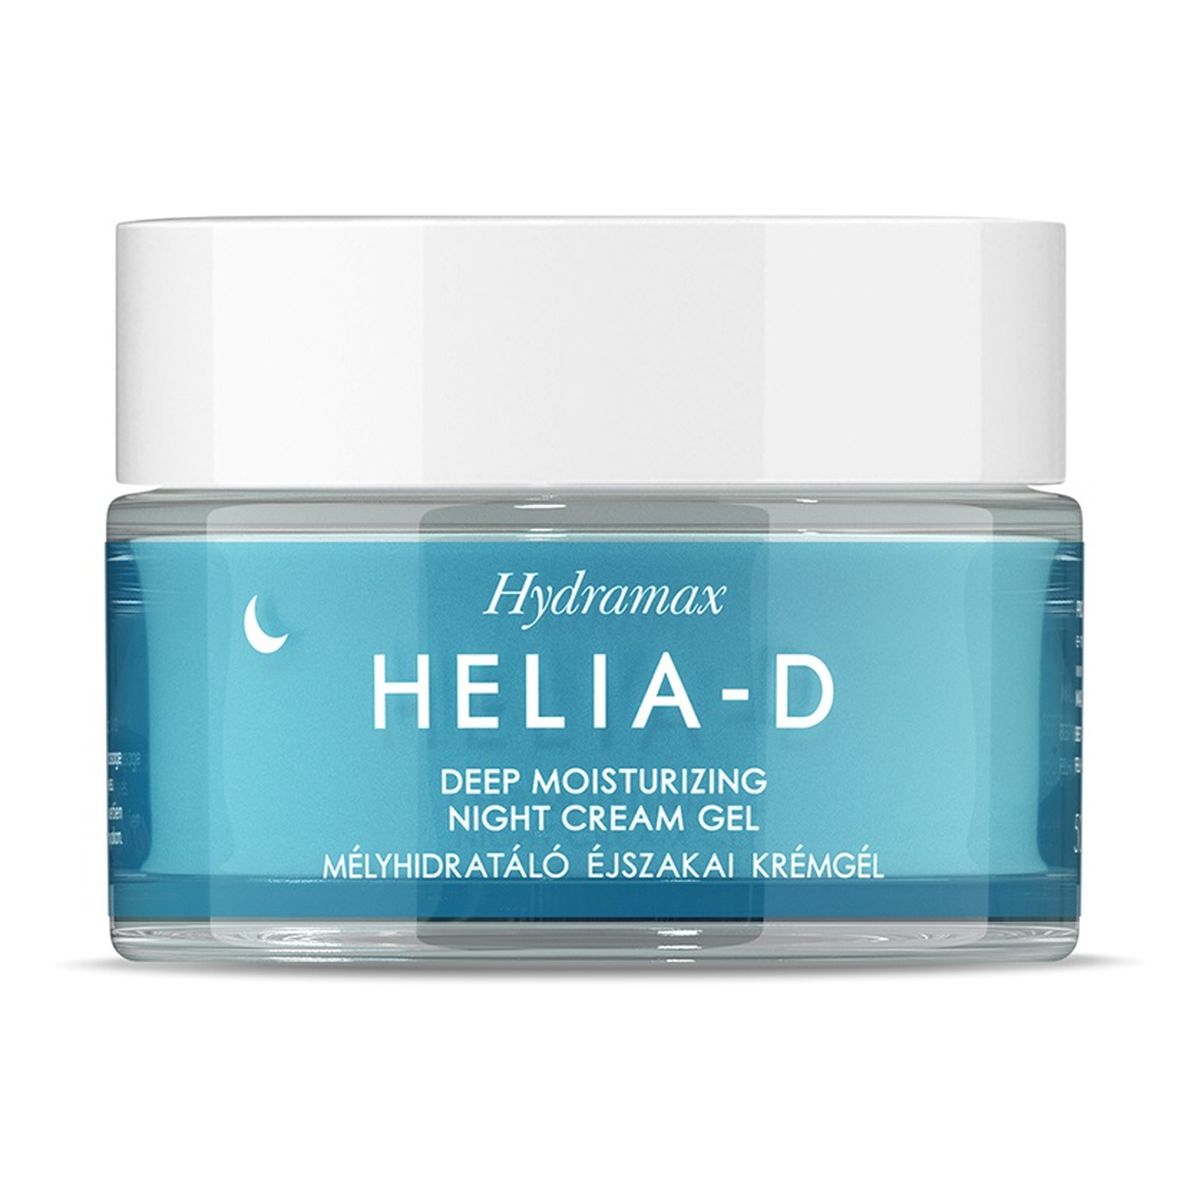 Helia-D Hydramax Deep Moisturizing Night Cream Gel głęboko nawilżający Krem-żel na noc 50ml